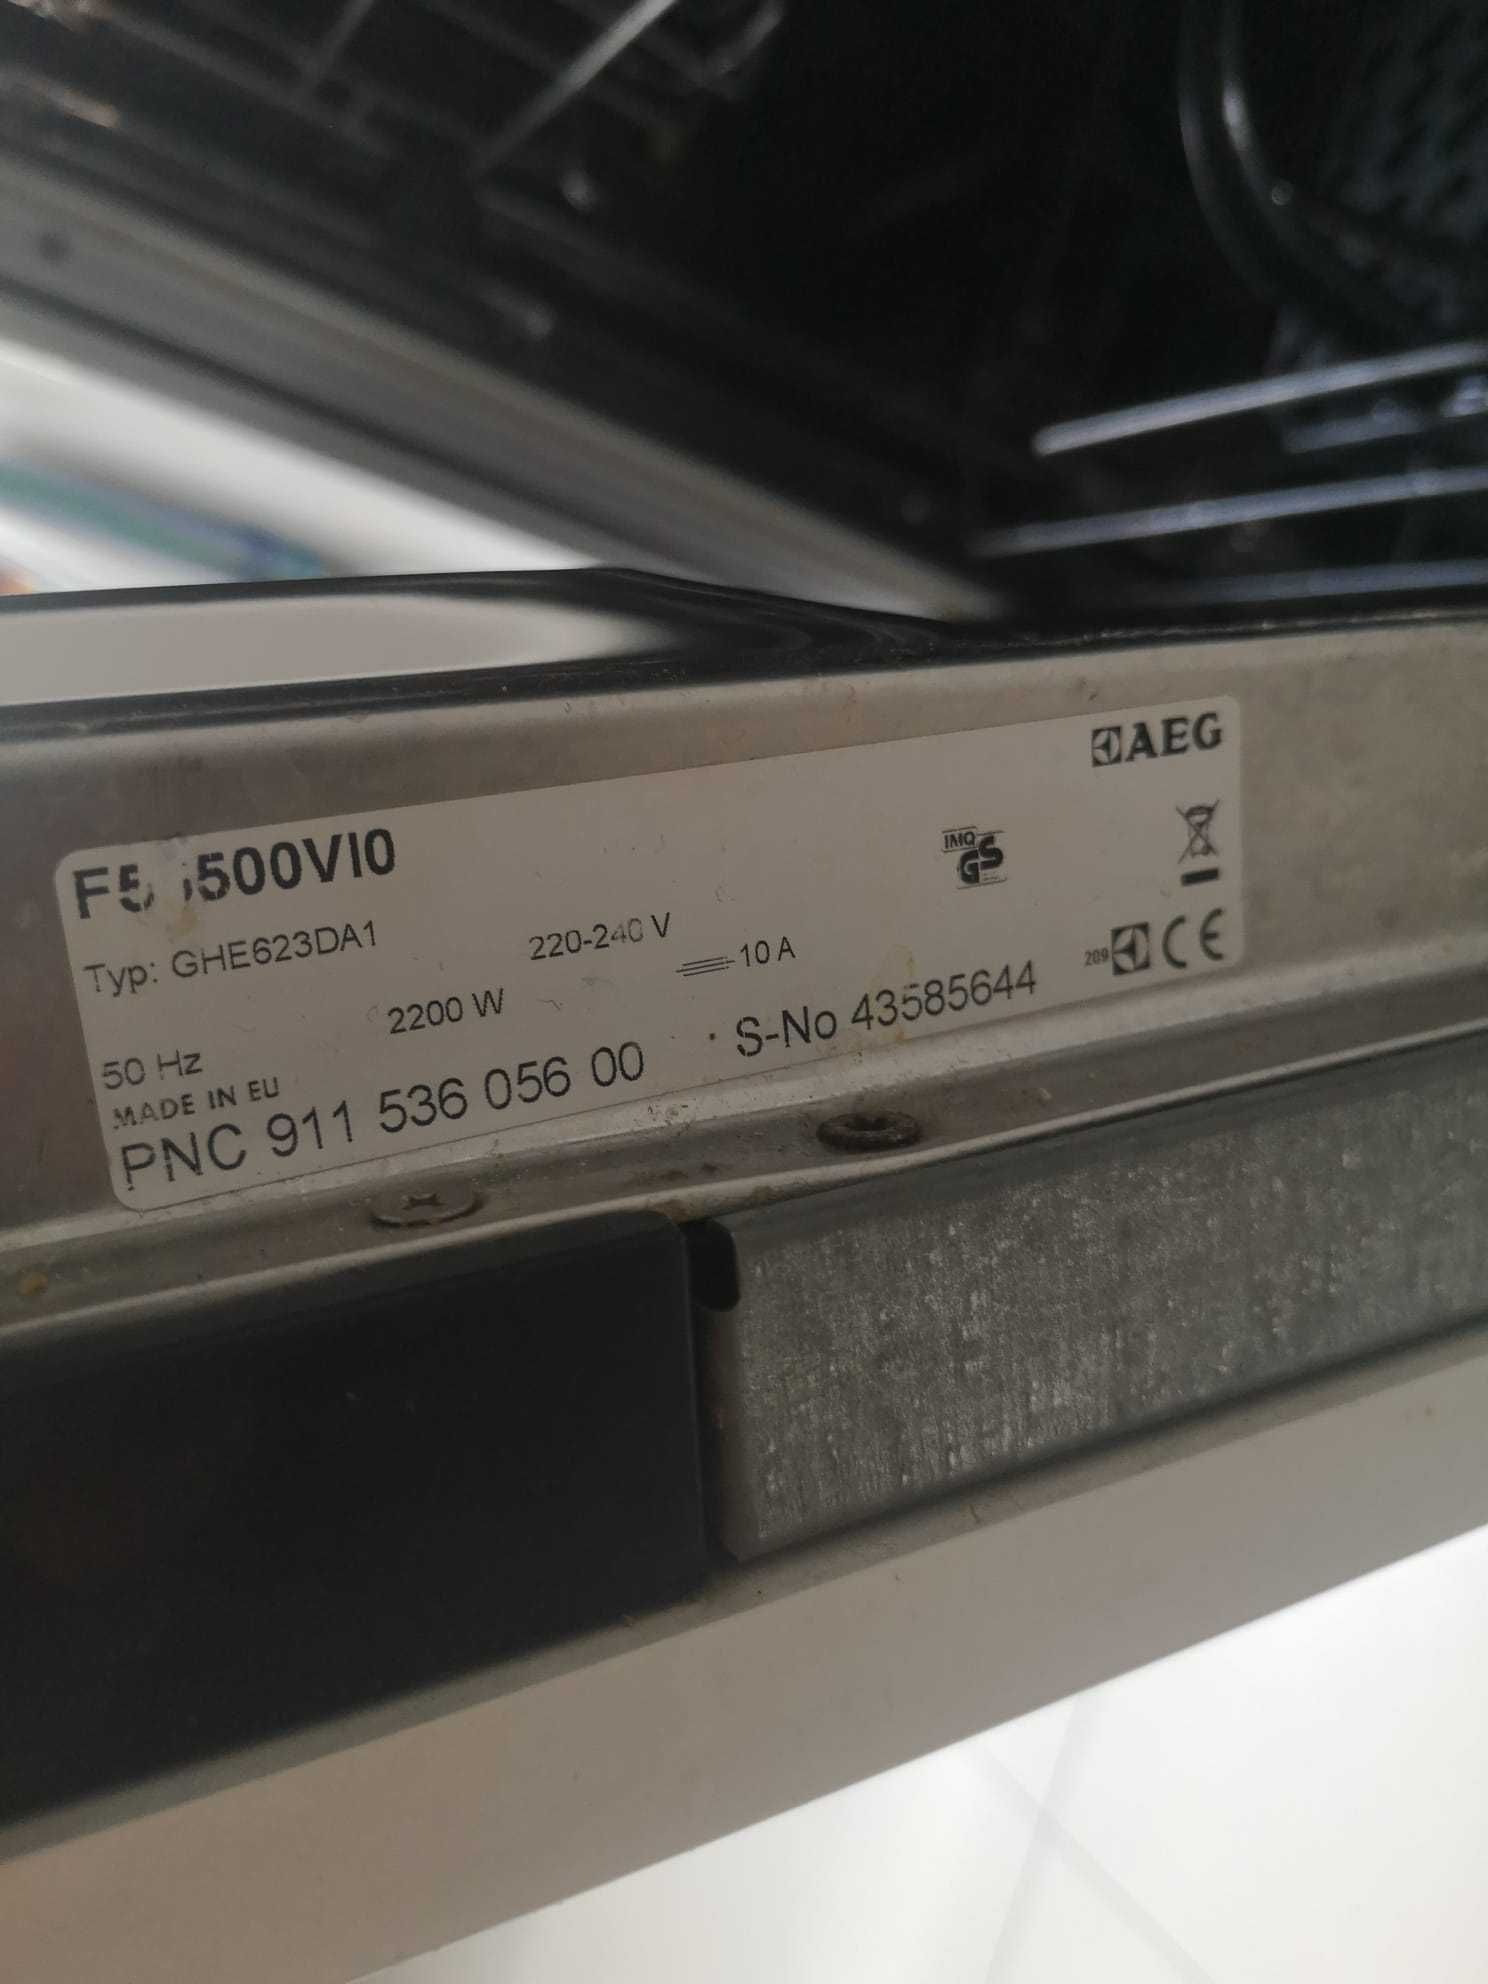 zmywarka AEG F55500VI0 do naprawy lub na części